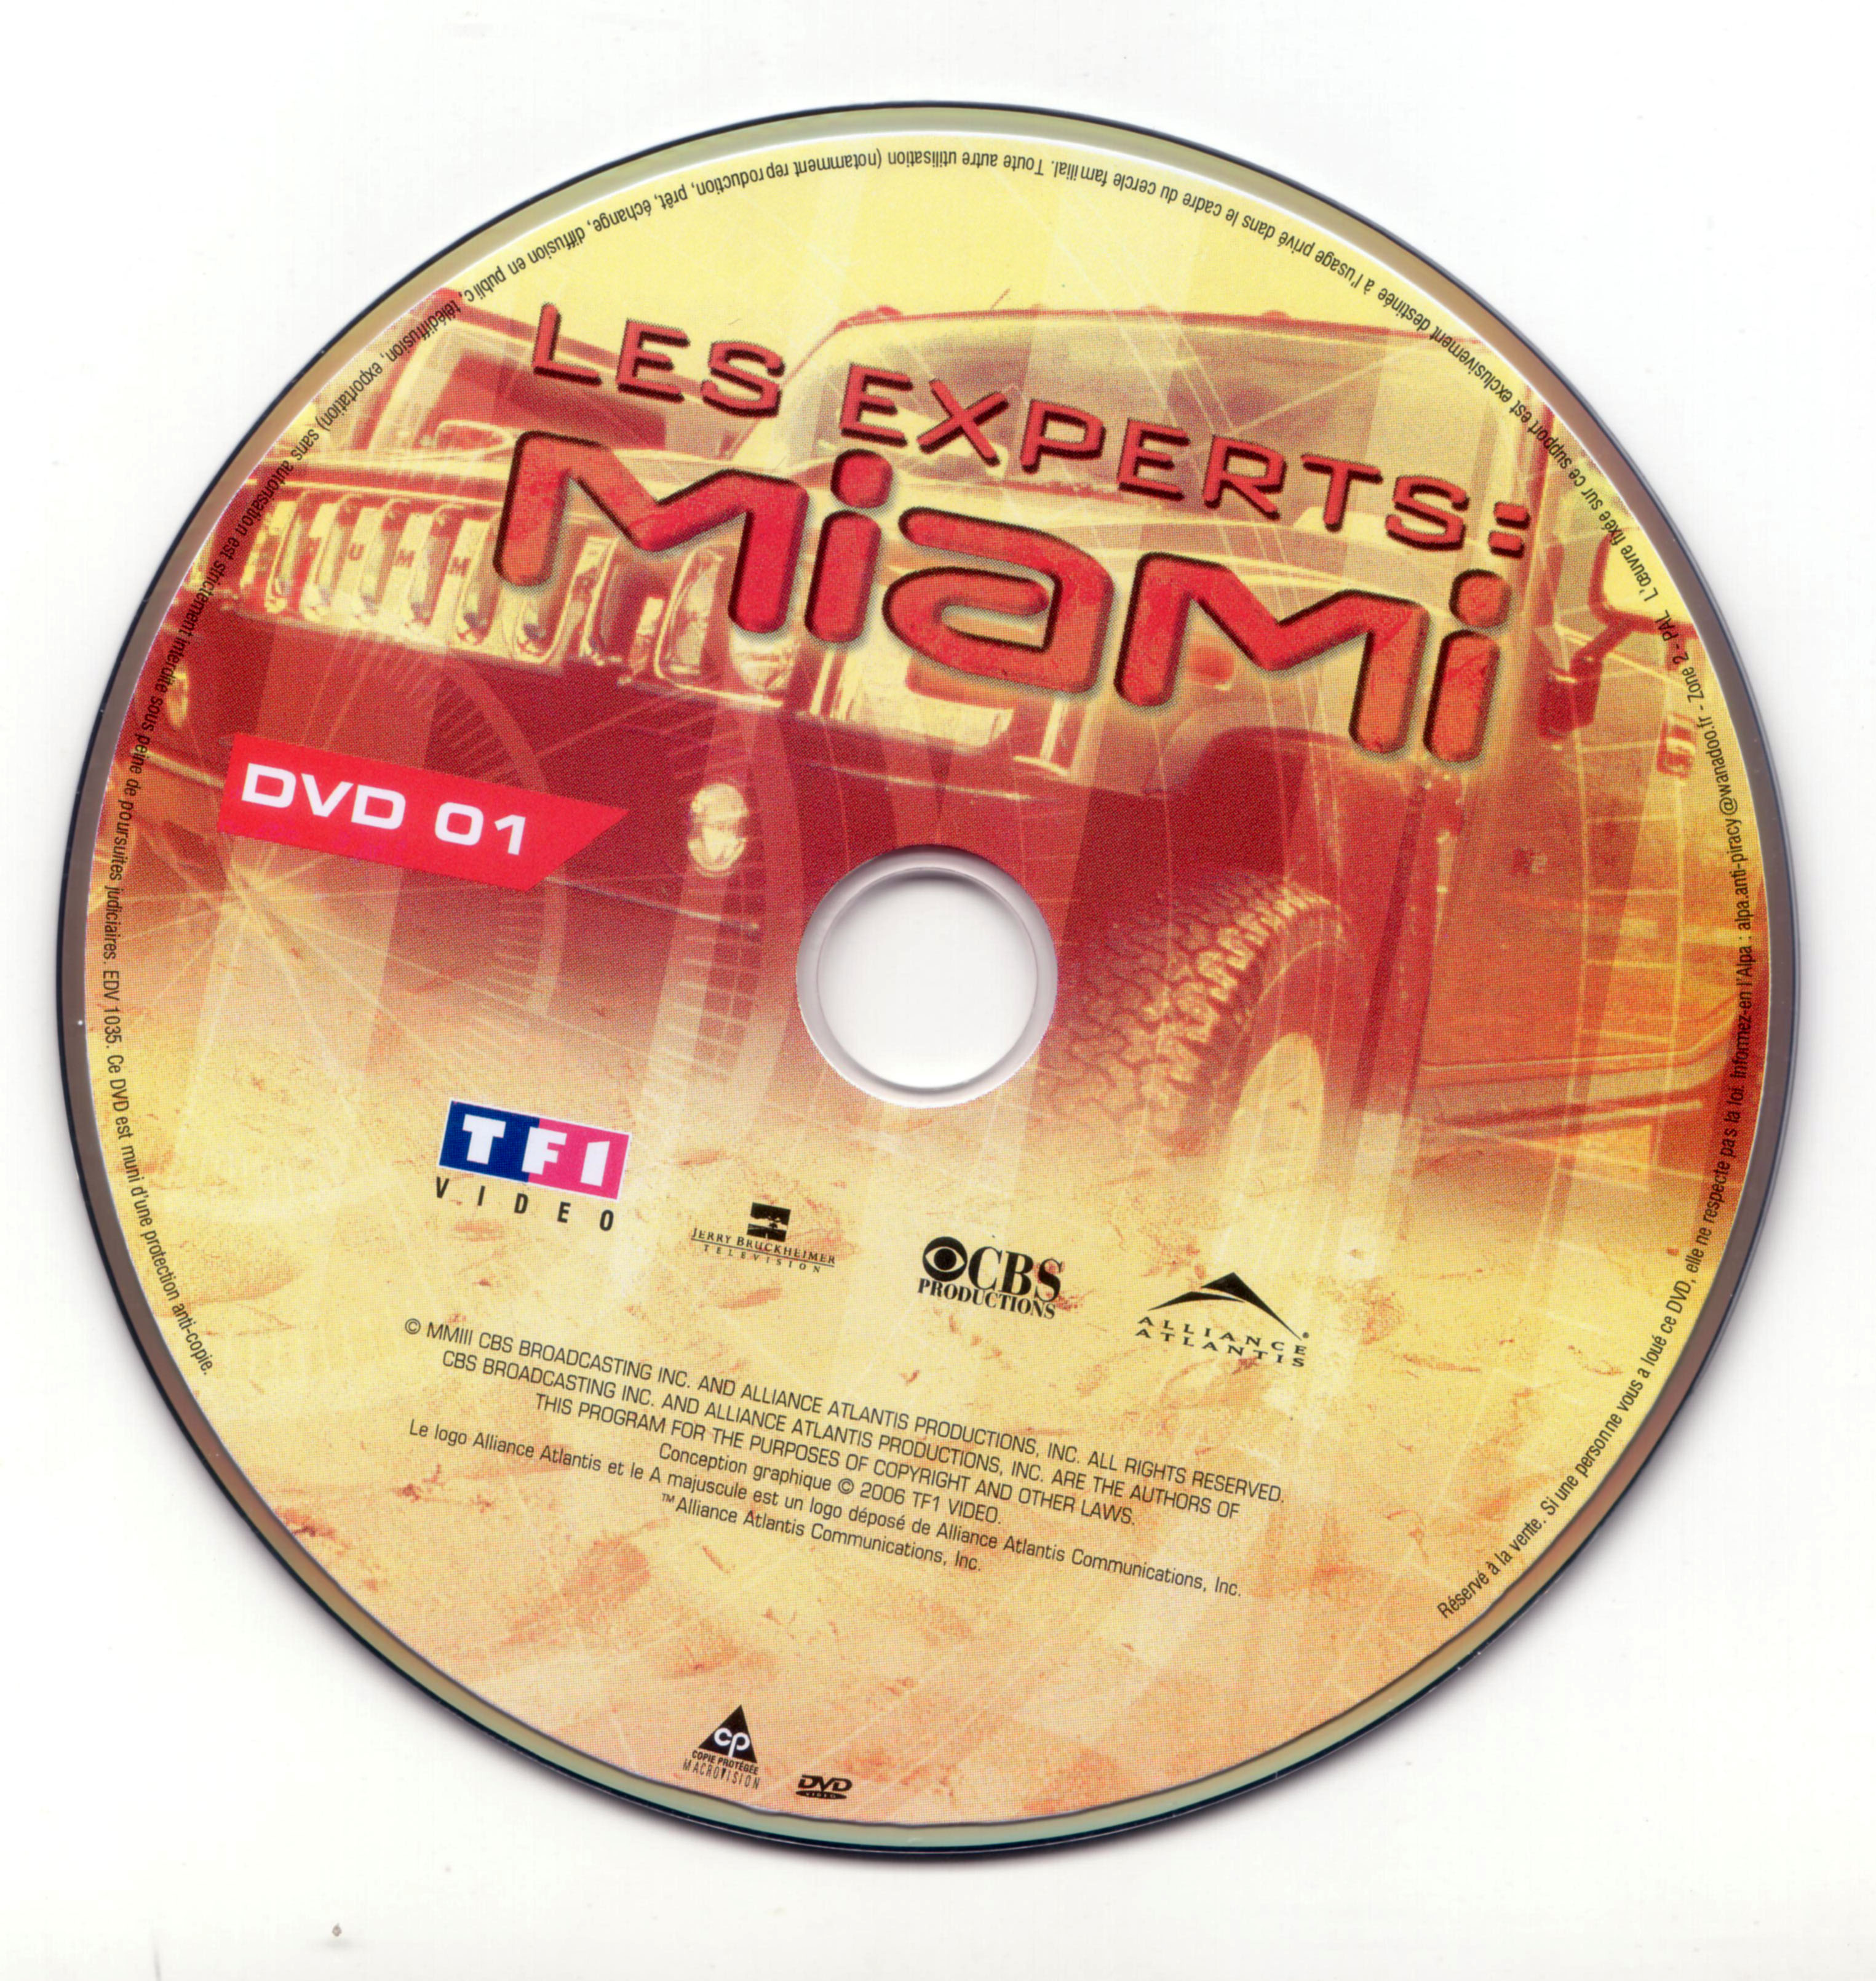 Les experts Miami Saison 2 vol 1 DISC 1